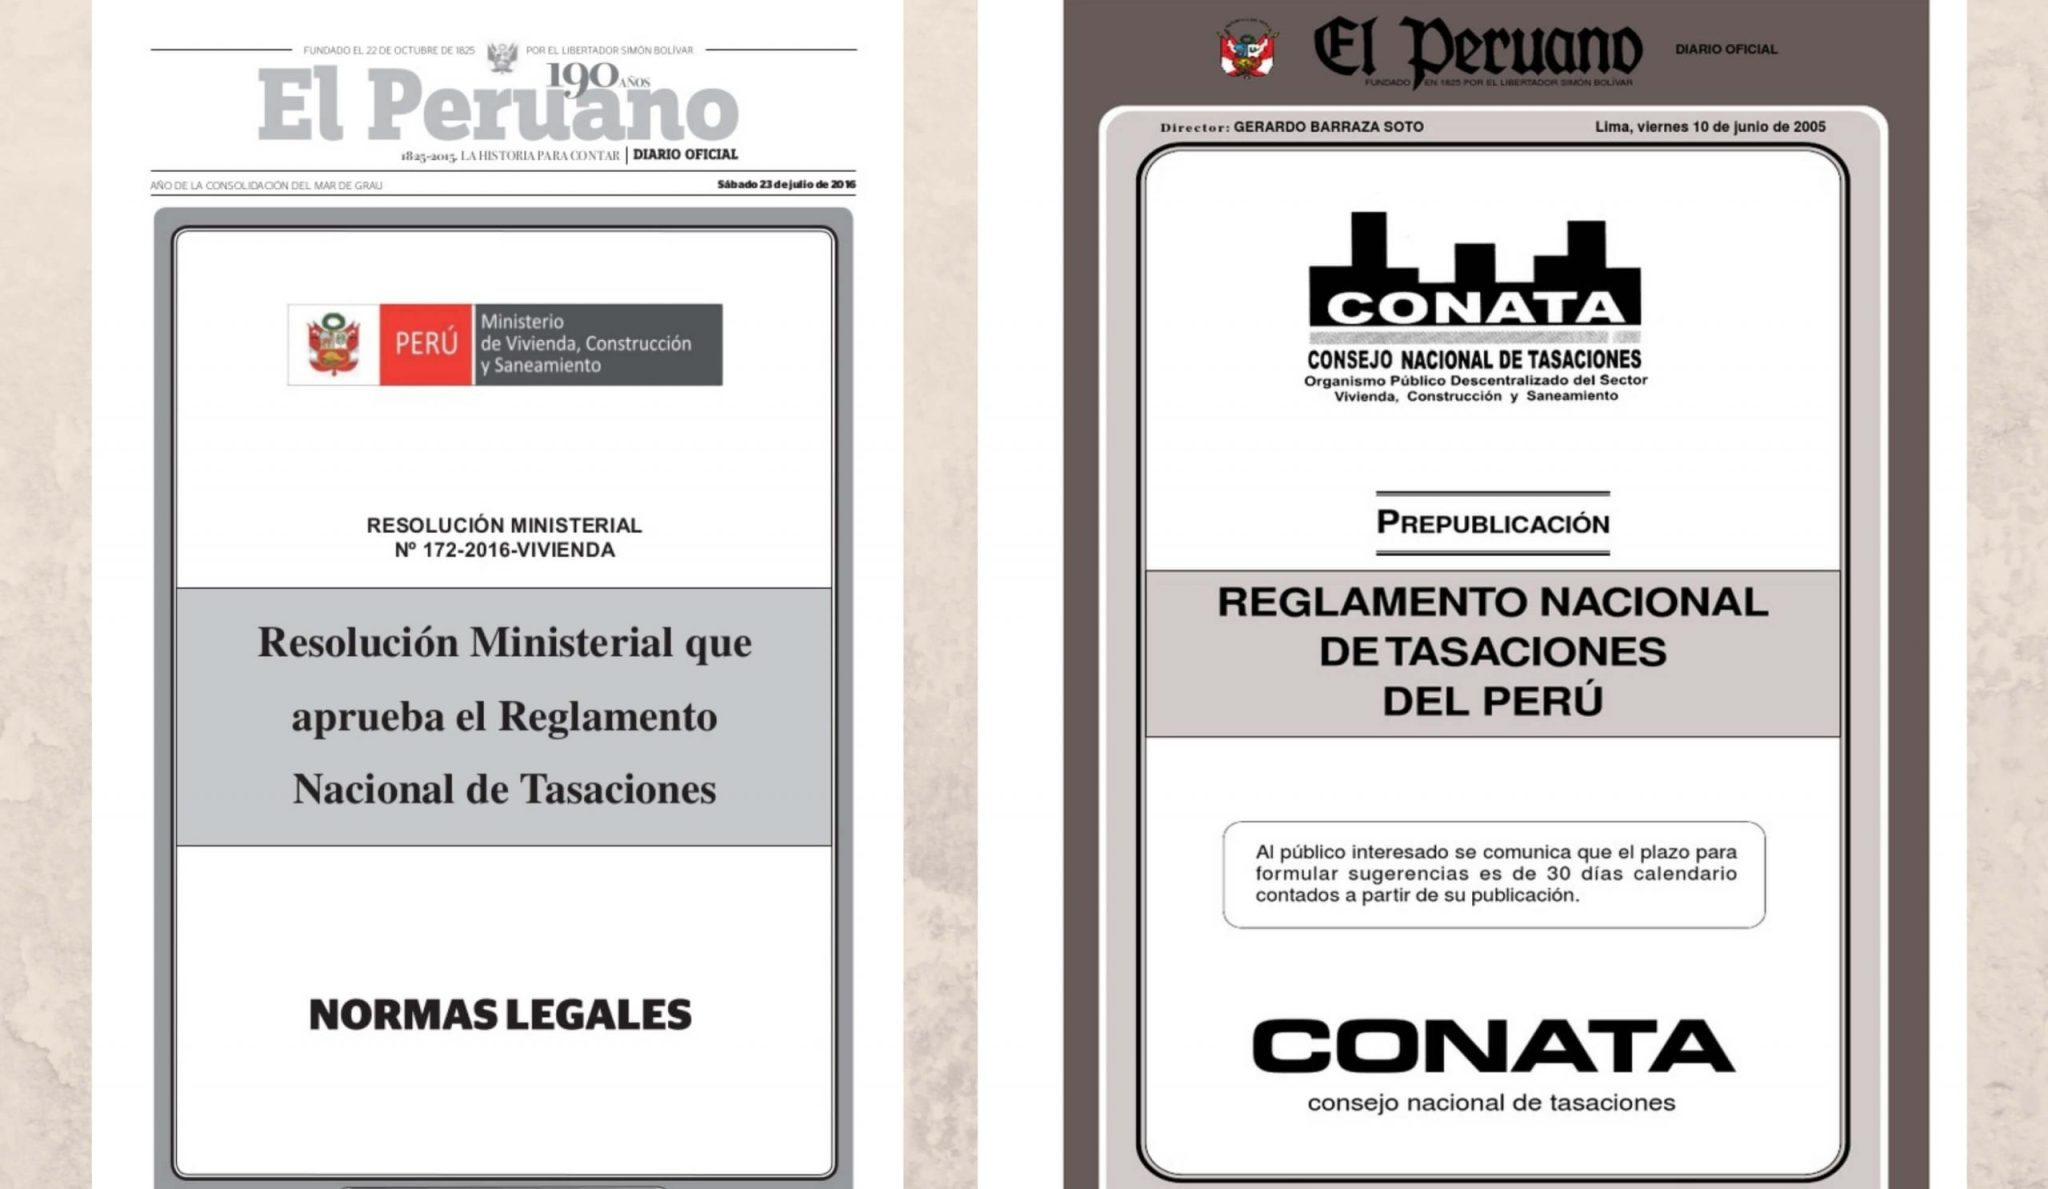 Reglamento Nacional de Tasaciones del Perú